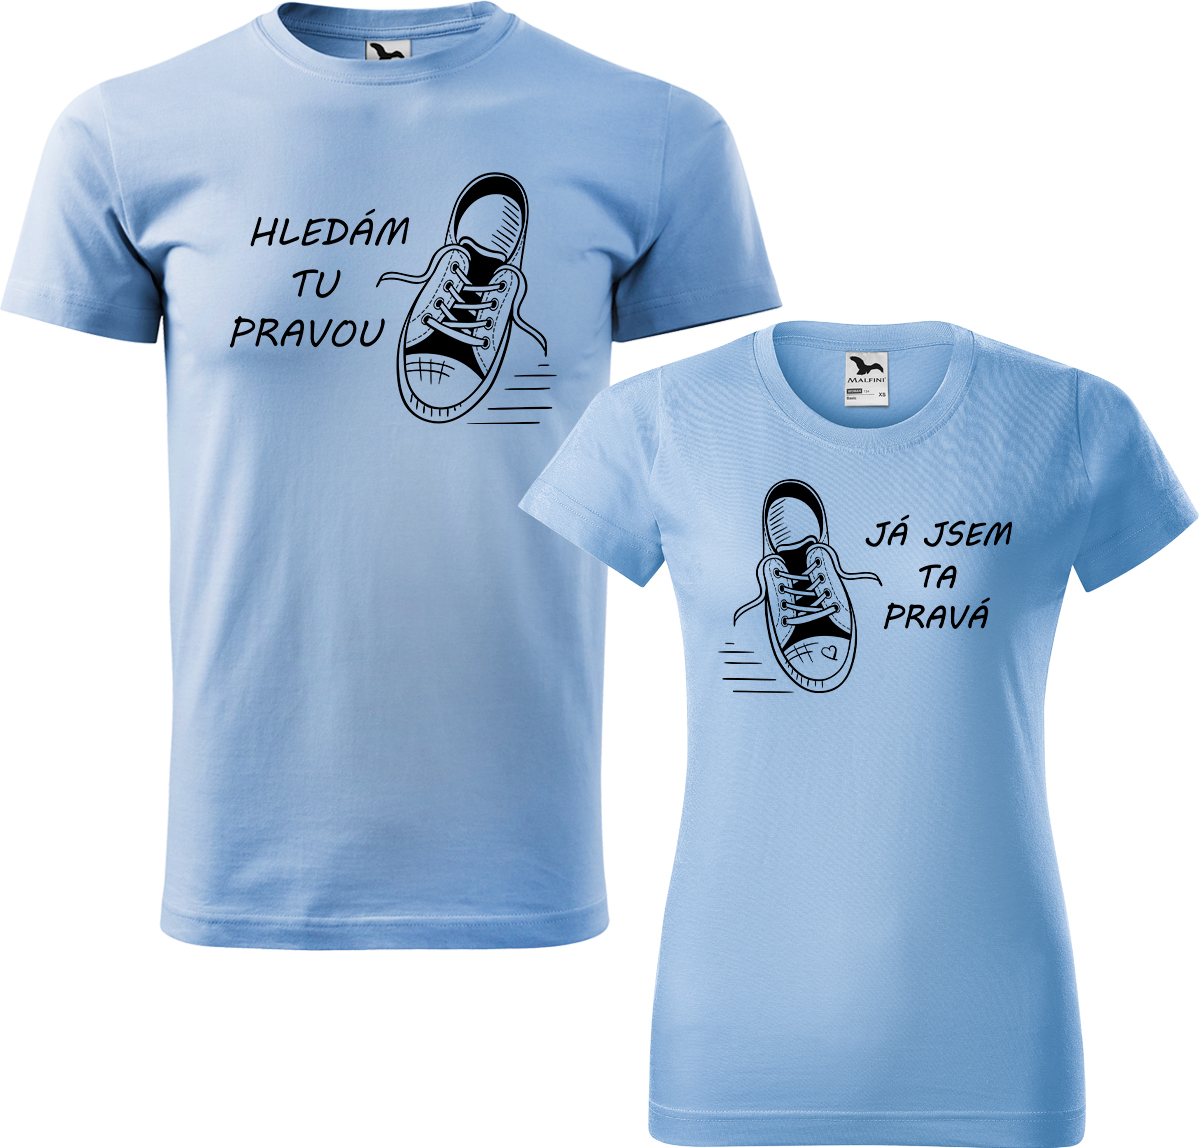 Trička pro páry - Kecky Barva: Nebesky modrá (15), Velikost dámské tričko: L, Velikost pánské tričko: L